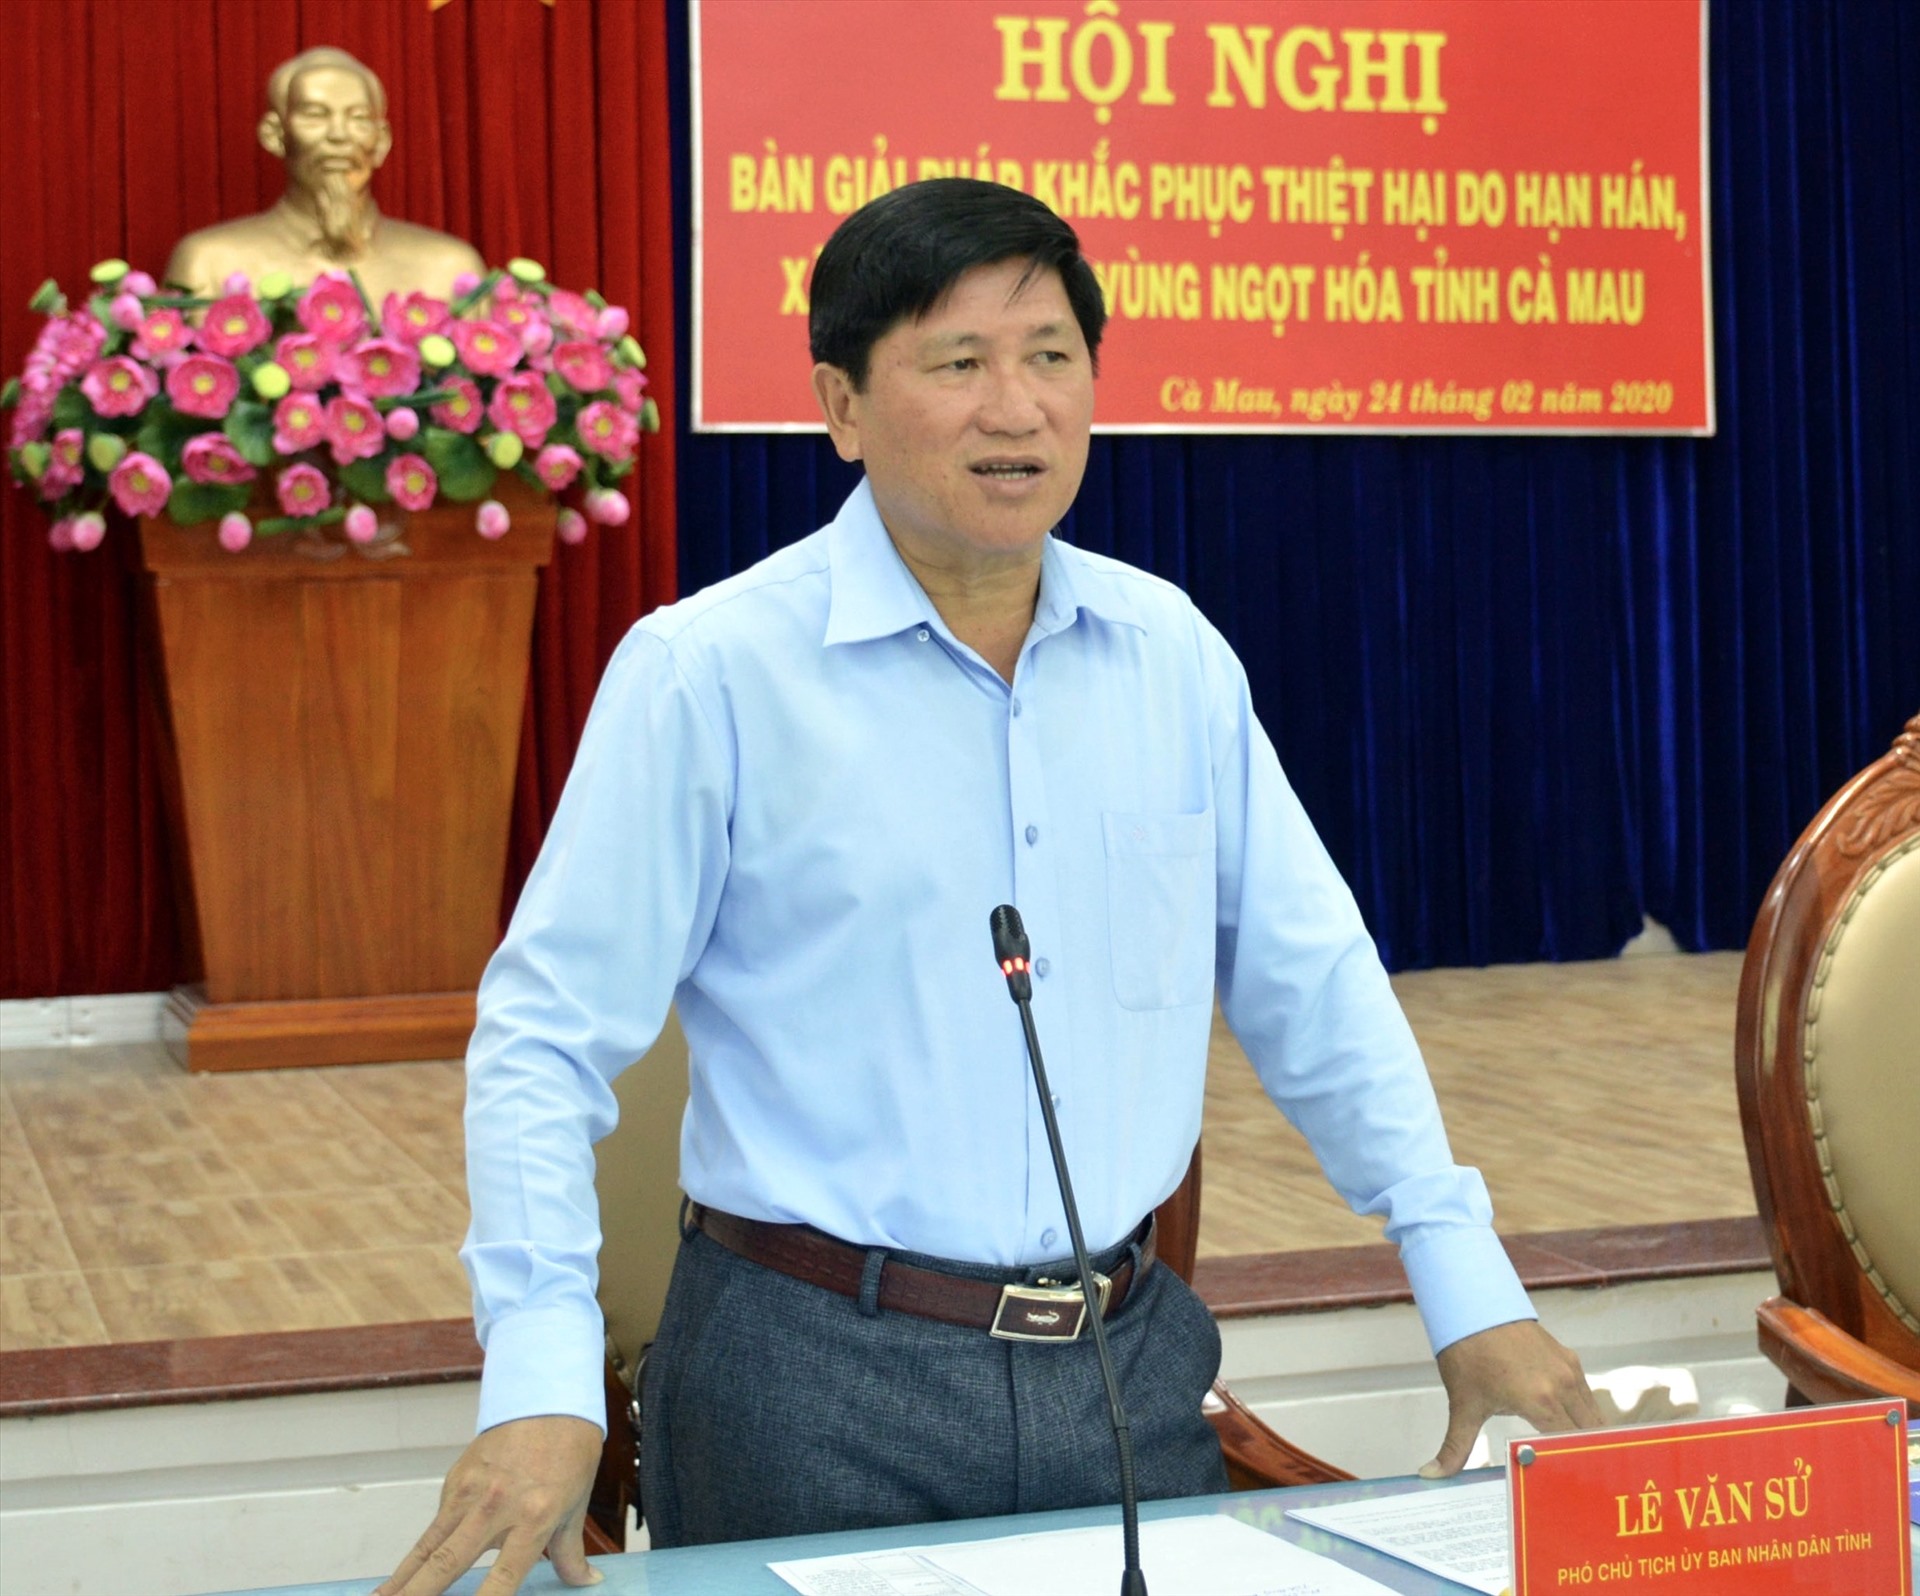 Ông Lê Văn Sử, Phó chủ tịch UBND tỉnh Cà Mau đồng tình với việc đưa nước biển vào vùng ngọt để giảm thiệt hại do sụp lở đất (ảnh Nhật Hồ)